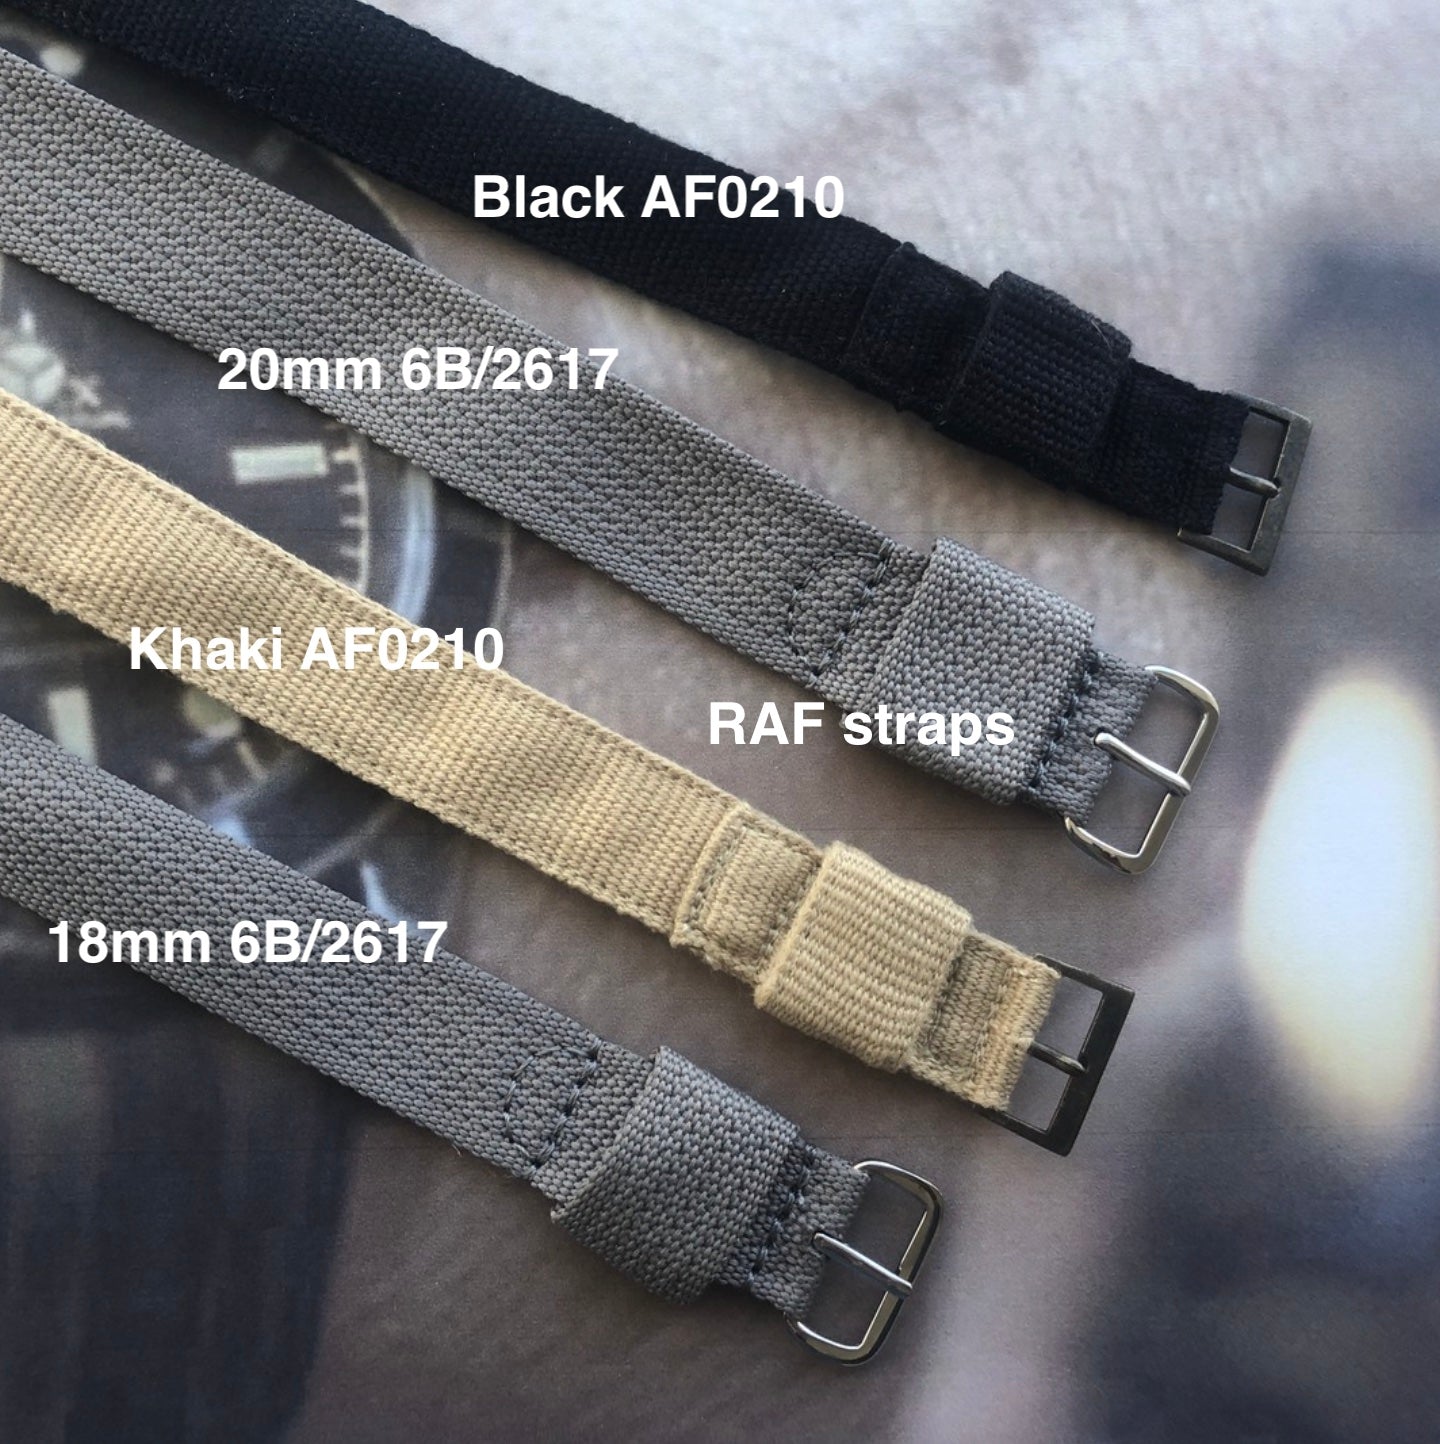 Black AF0210 strap